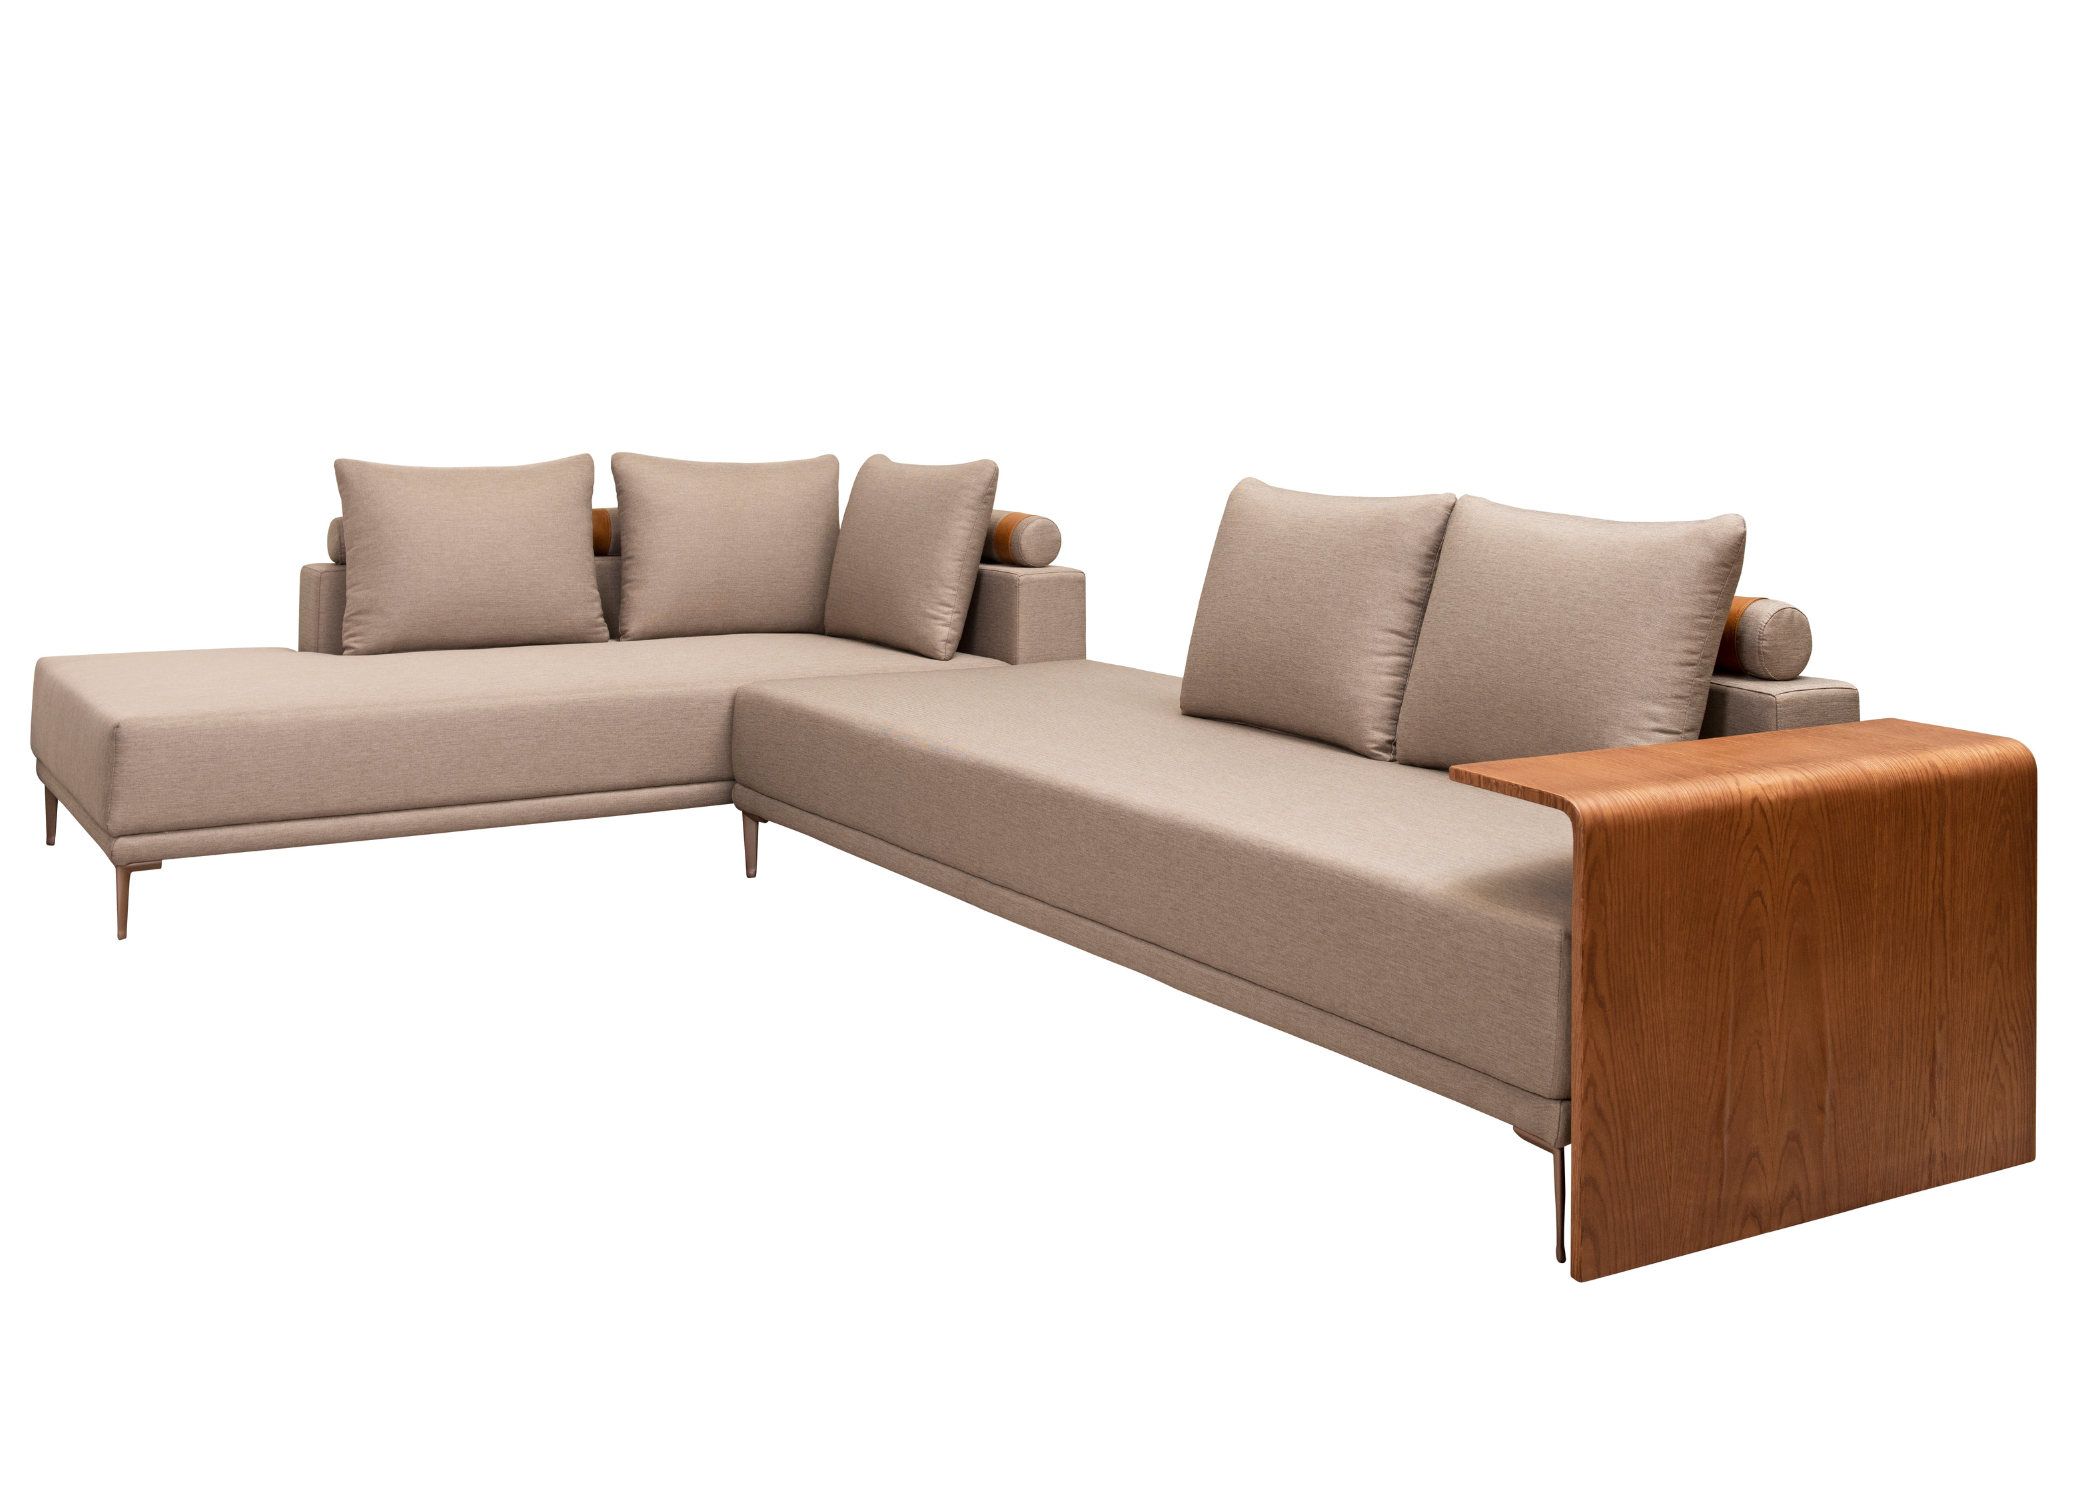 Detalhe do design robusto do sofá Beatriz